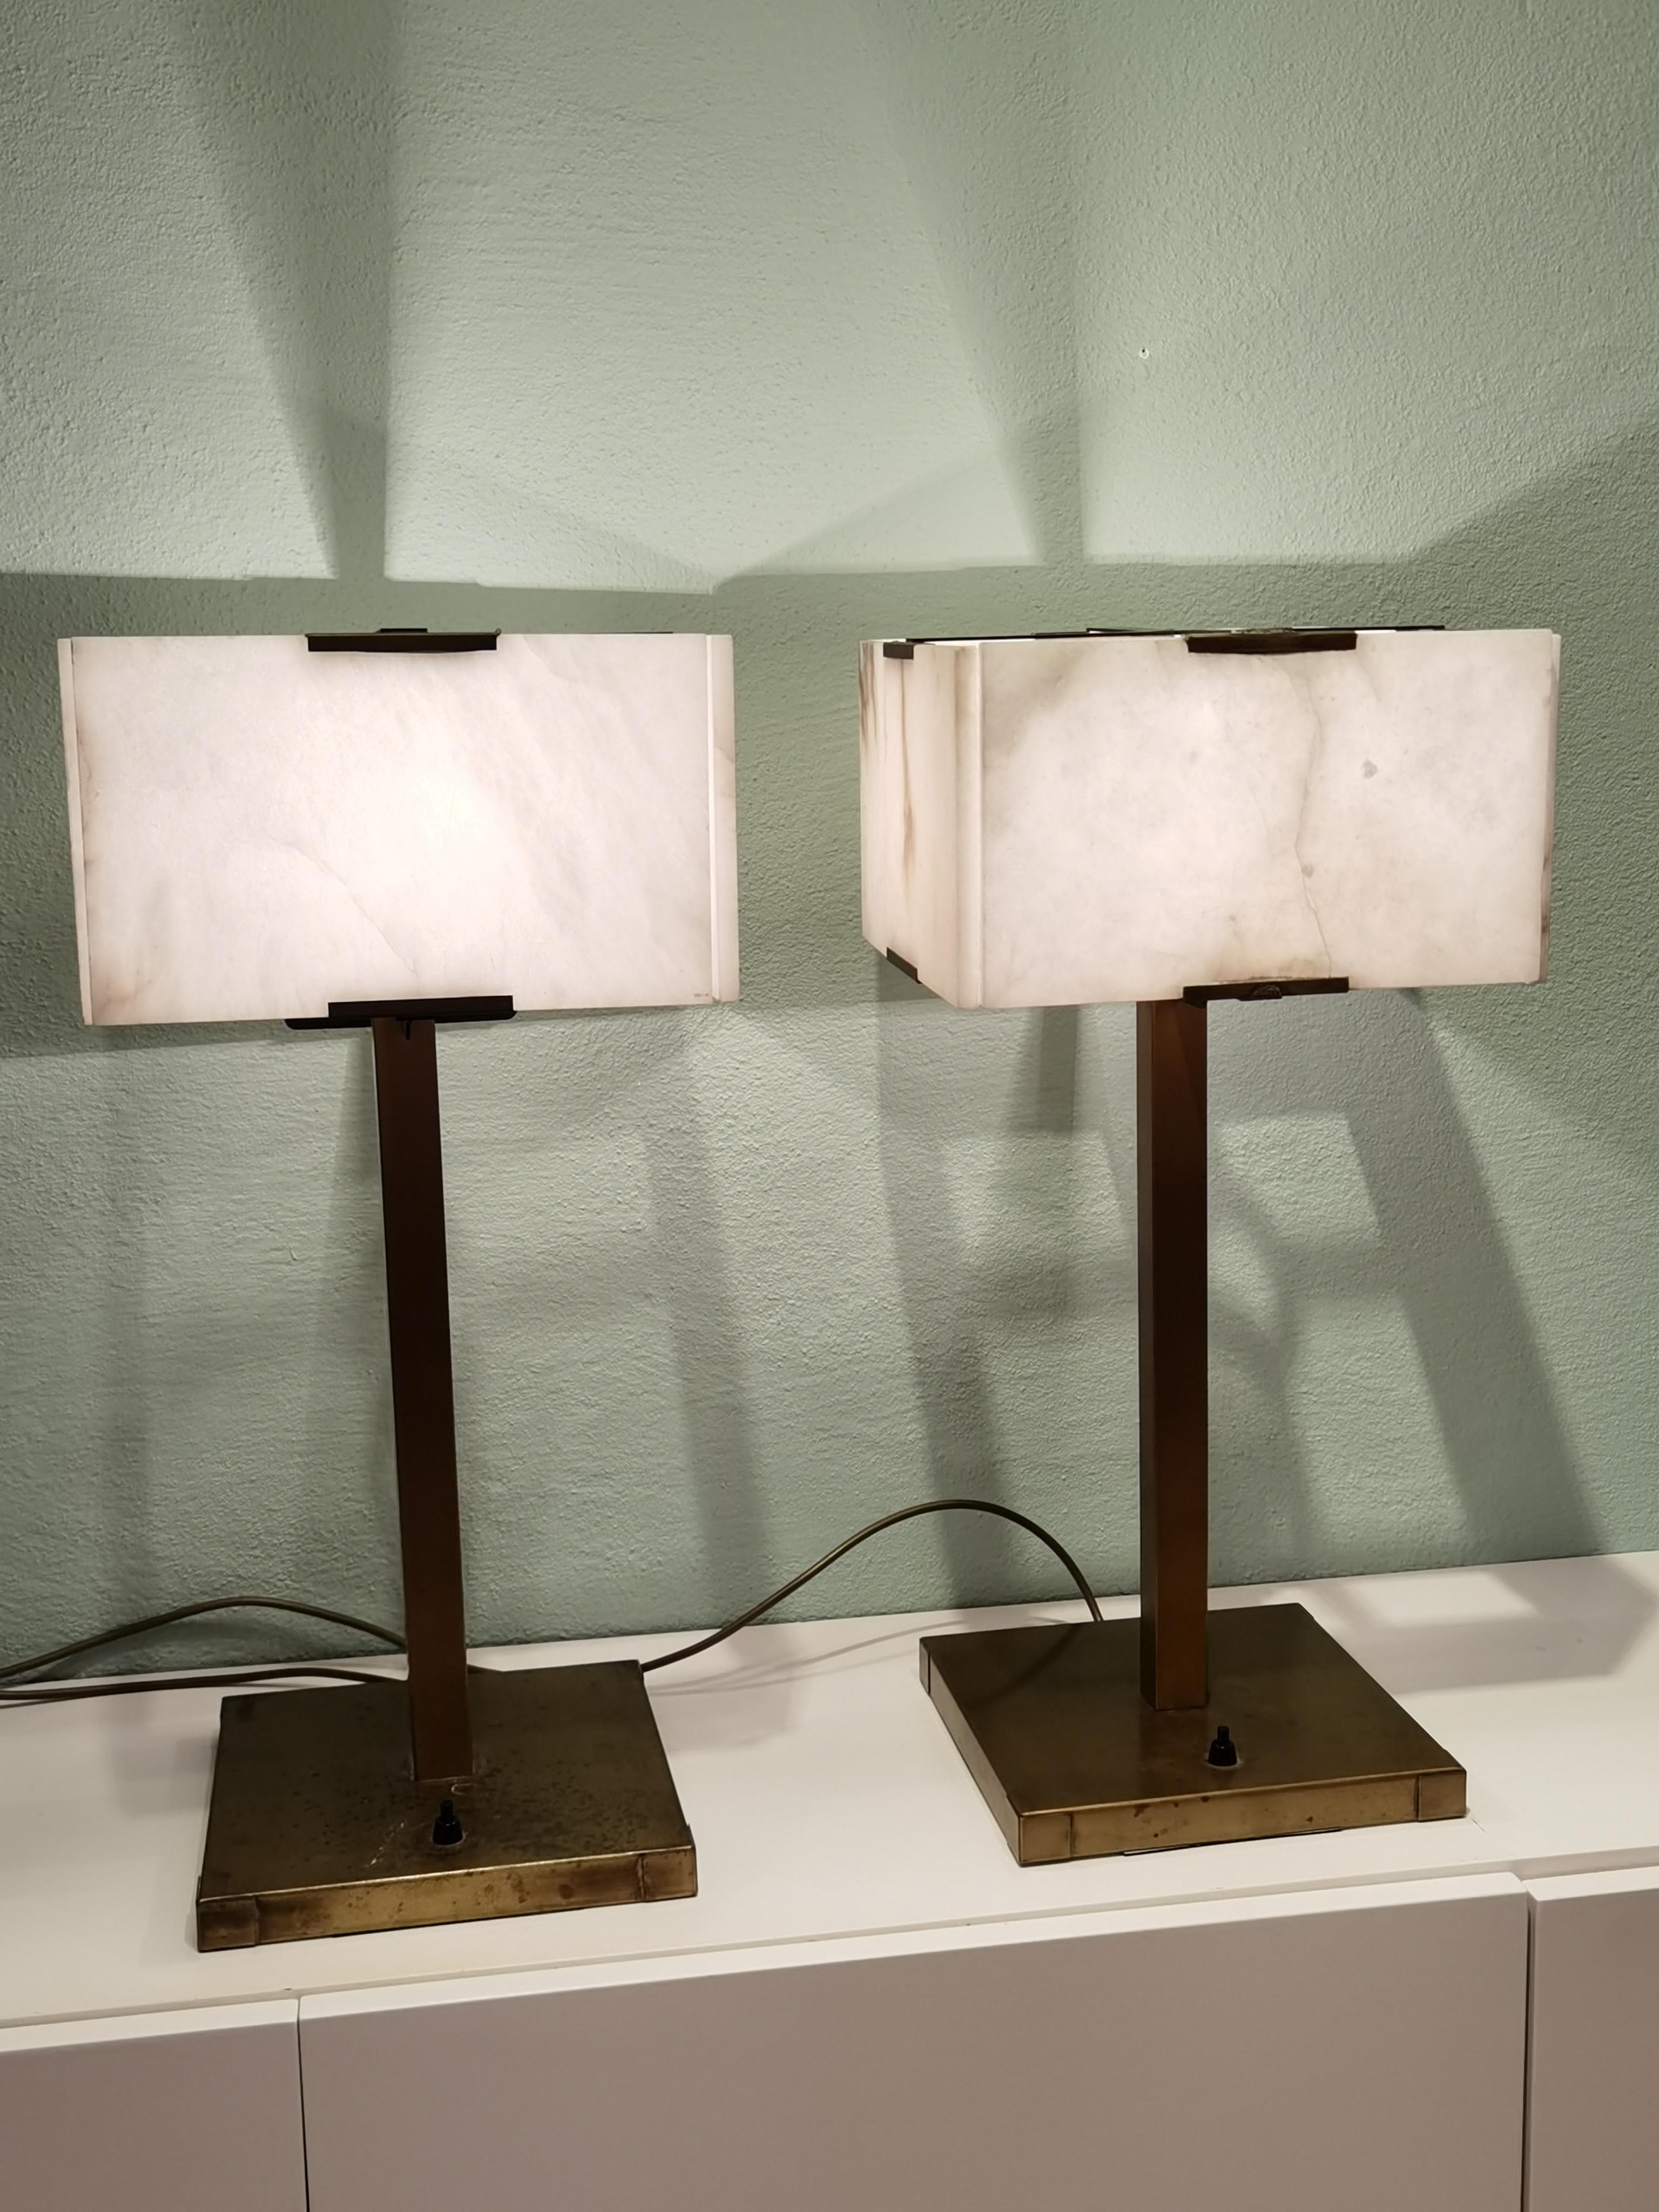 Mid-Century Modern Tischlampen mit Lampenschirmen aus Alabaster. Die rechteckigen Schirme werden von vier Alabasterplatten gebildet. Ständer aus massivem Messing mit neuen elektrischen Kabeln. Hergestellt in Frankreich in den 1960er Jahren.